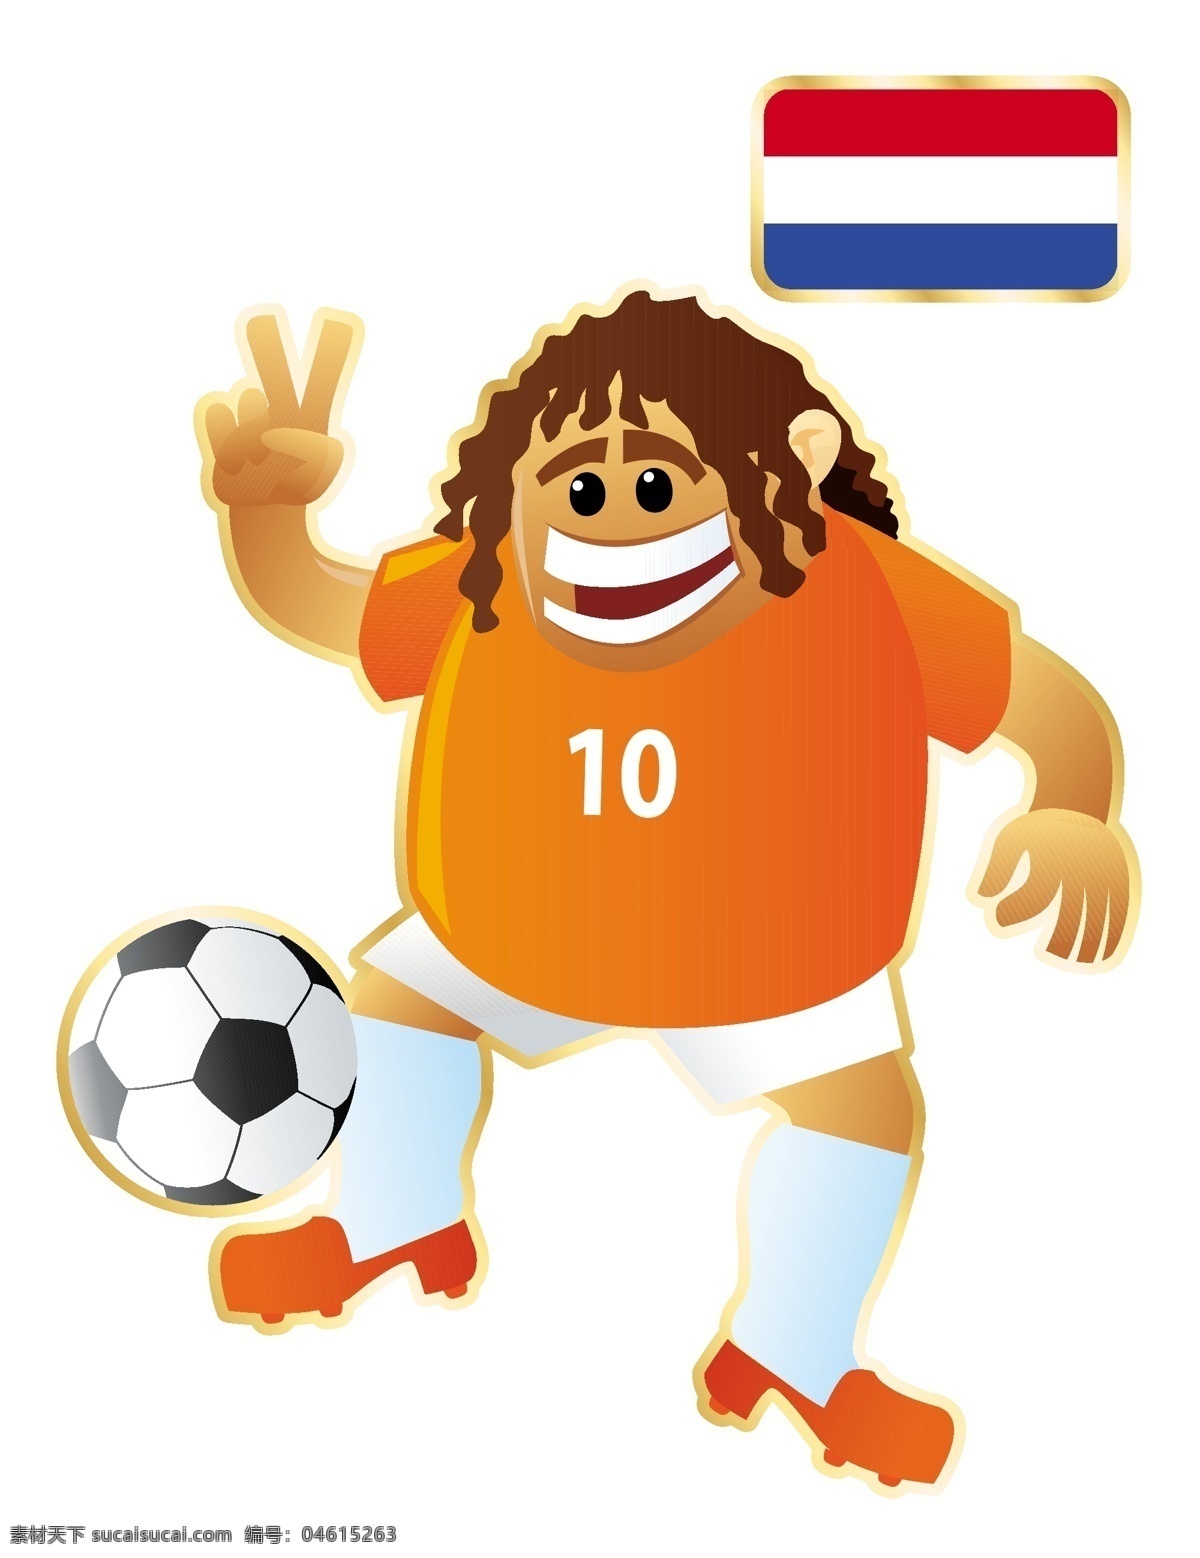 国家 足球 卡通 人物 形象 矢量图 10号 运动员 大胖子 运动 踢球 外国 矢量 扁平化 平面